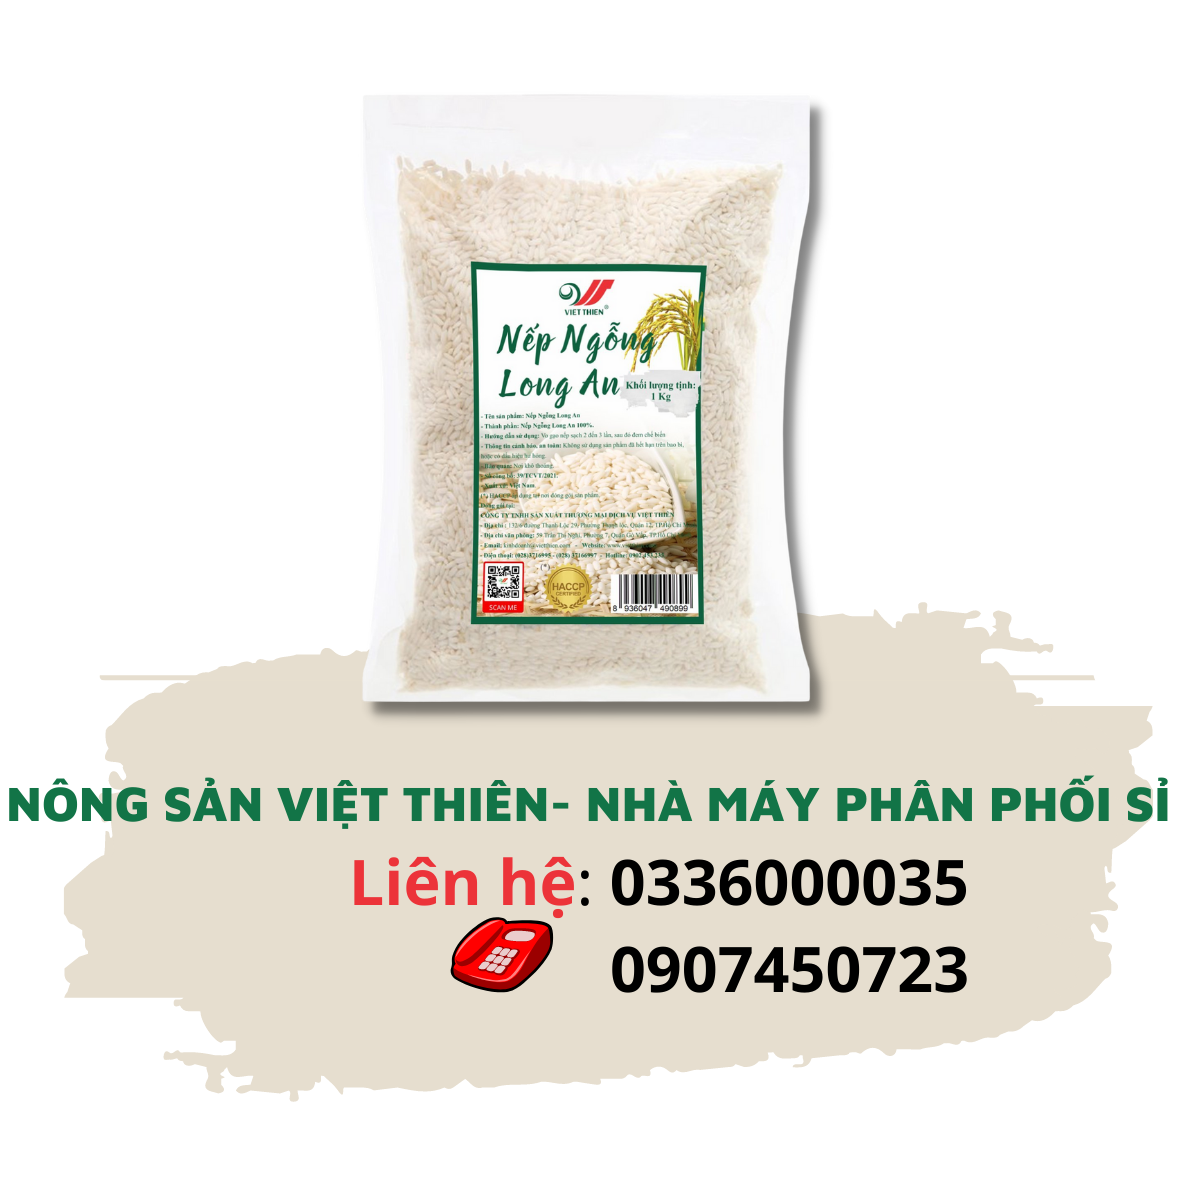 Nếp Ngỗng Long An Việt Thiên 1kg, nhà máy sản xuất và phân phối nông sản Việt Thiên, giá rẻ